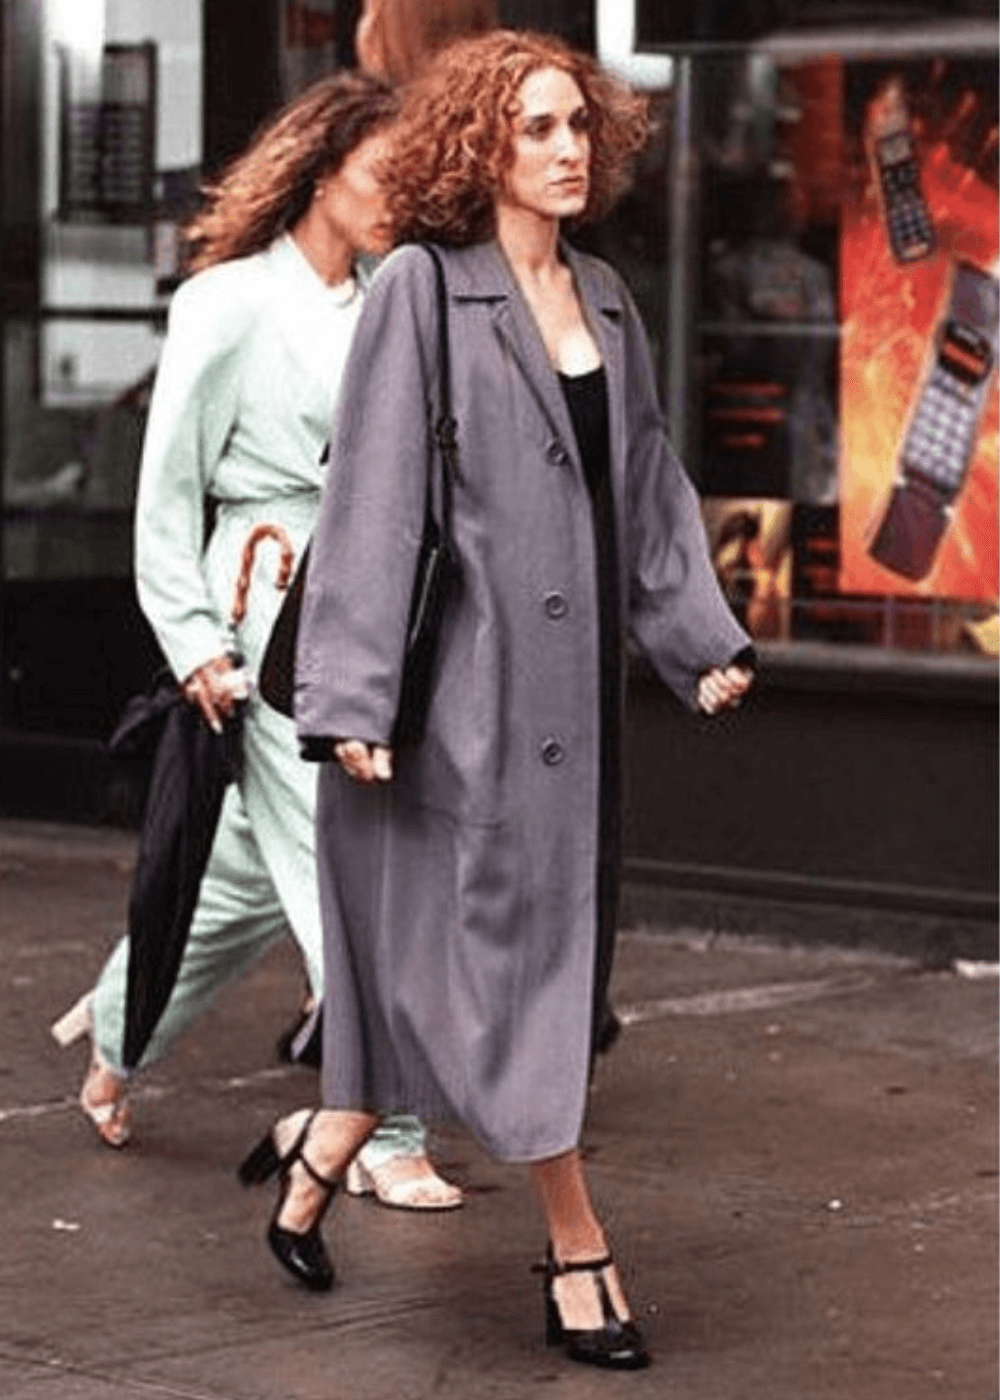 Sarah Jessica Parker - vestido preto, sandália e casaco longo cinza - Carrie Bradshaw - outono - mulher andando na rua - https://stealthelook.com.br